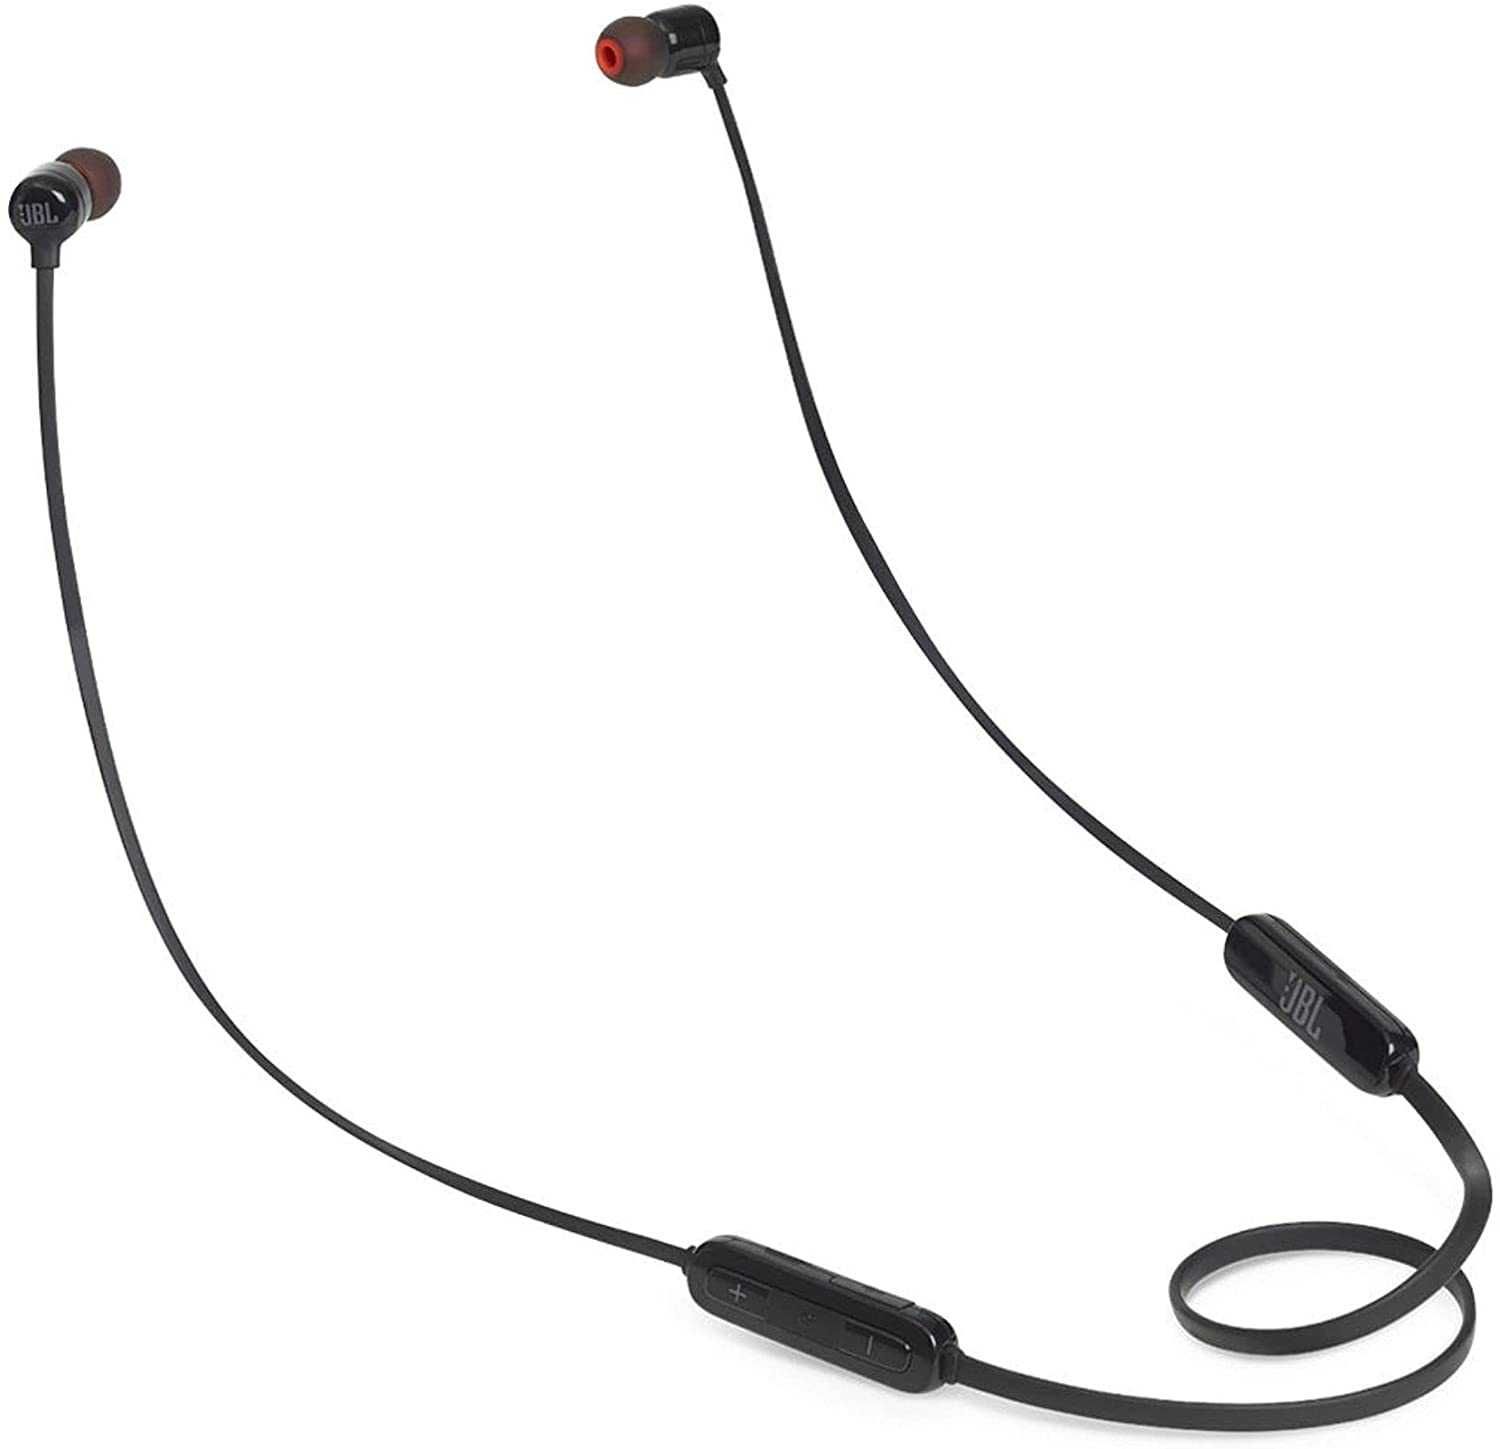 SIGILATE Casti In Ear JBL Tune 110 bt fara fir Wireless Bluetooth